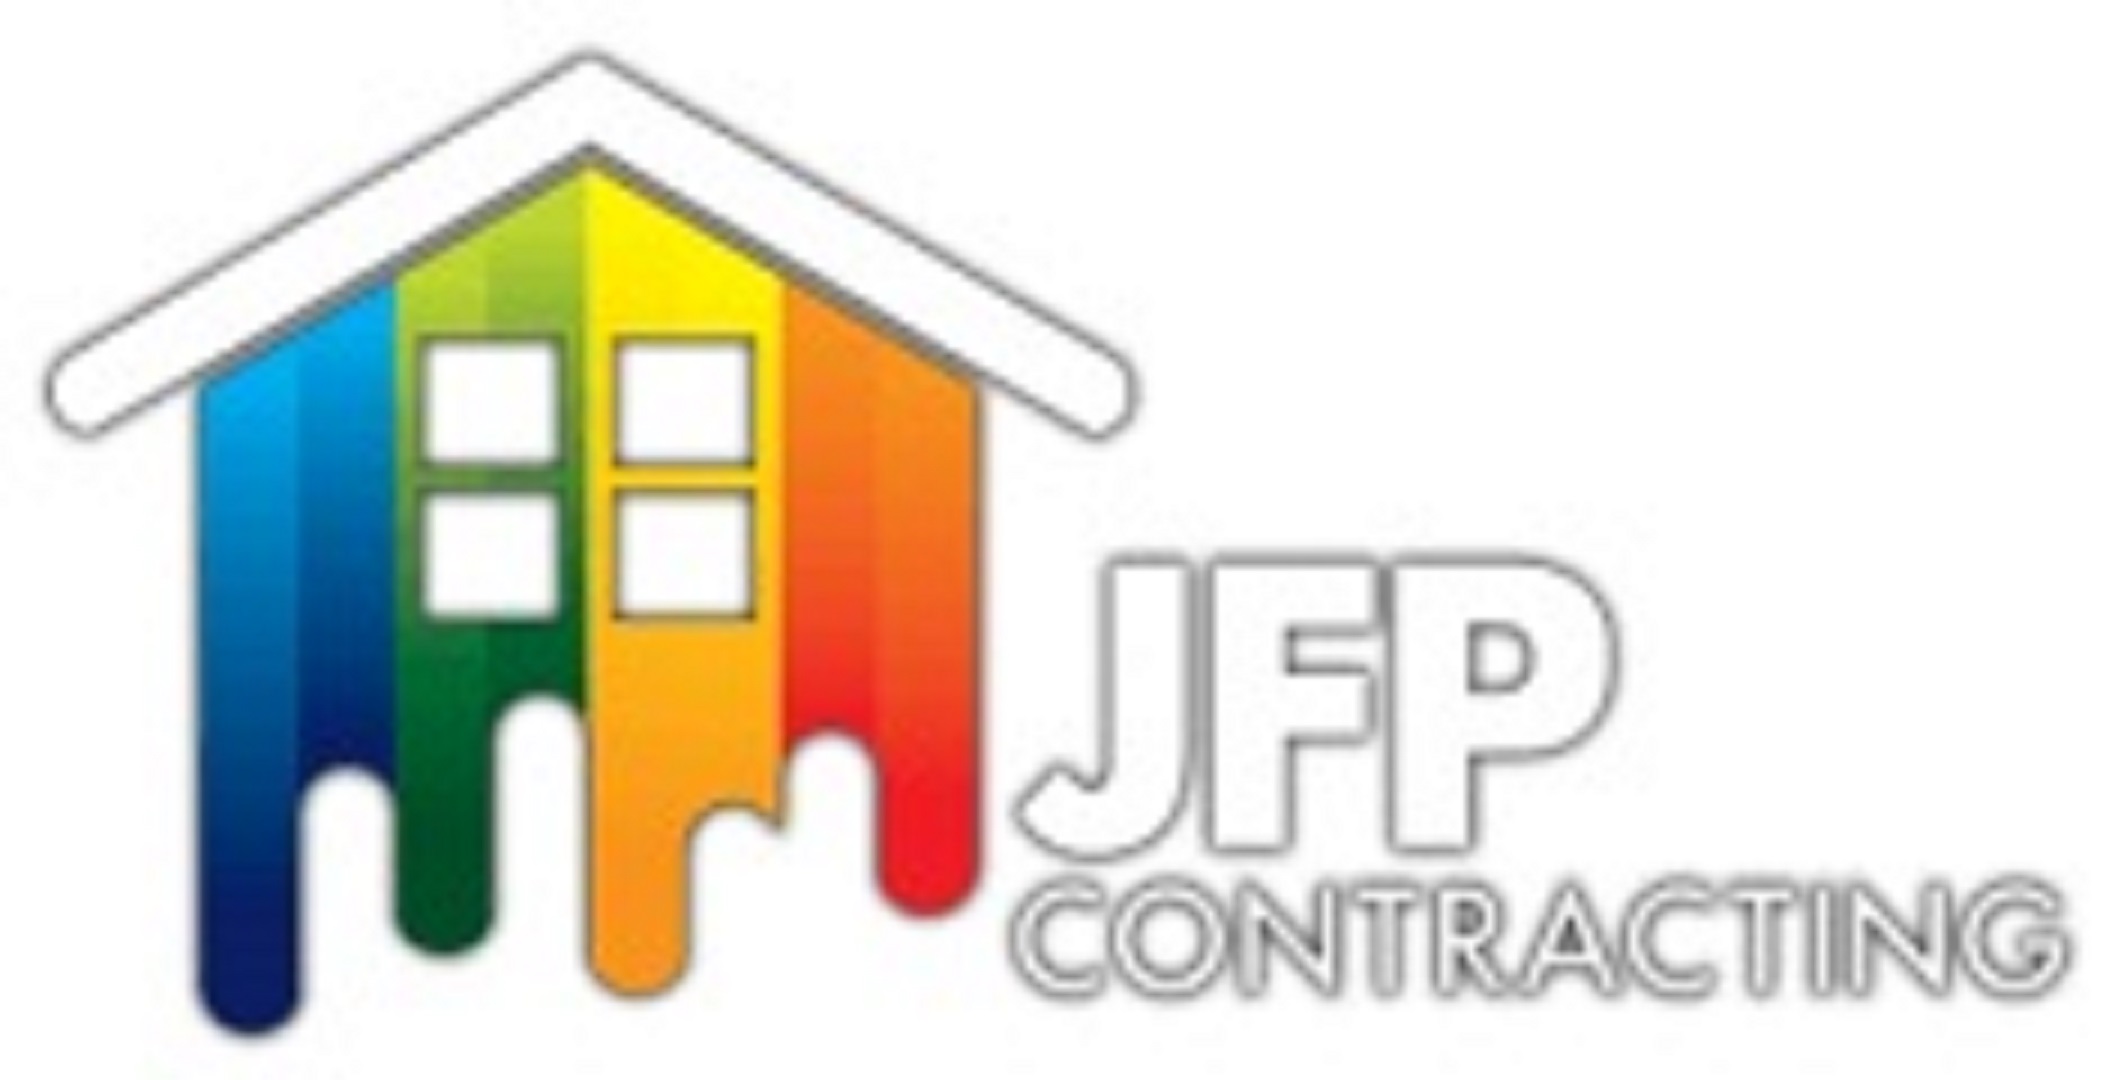 JFP Contracting